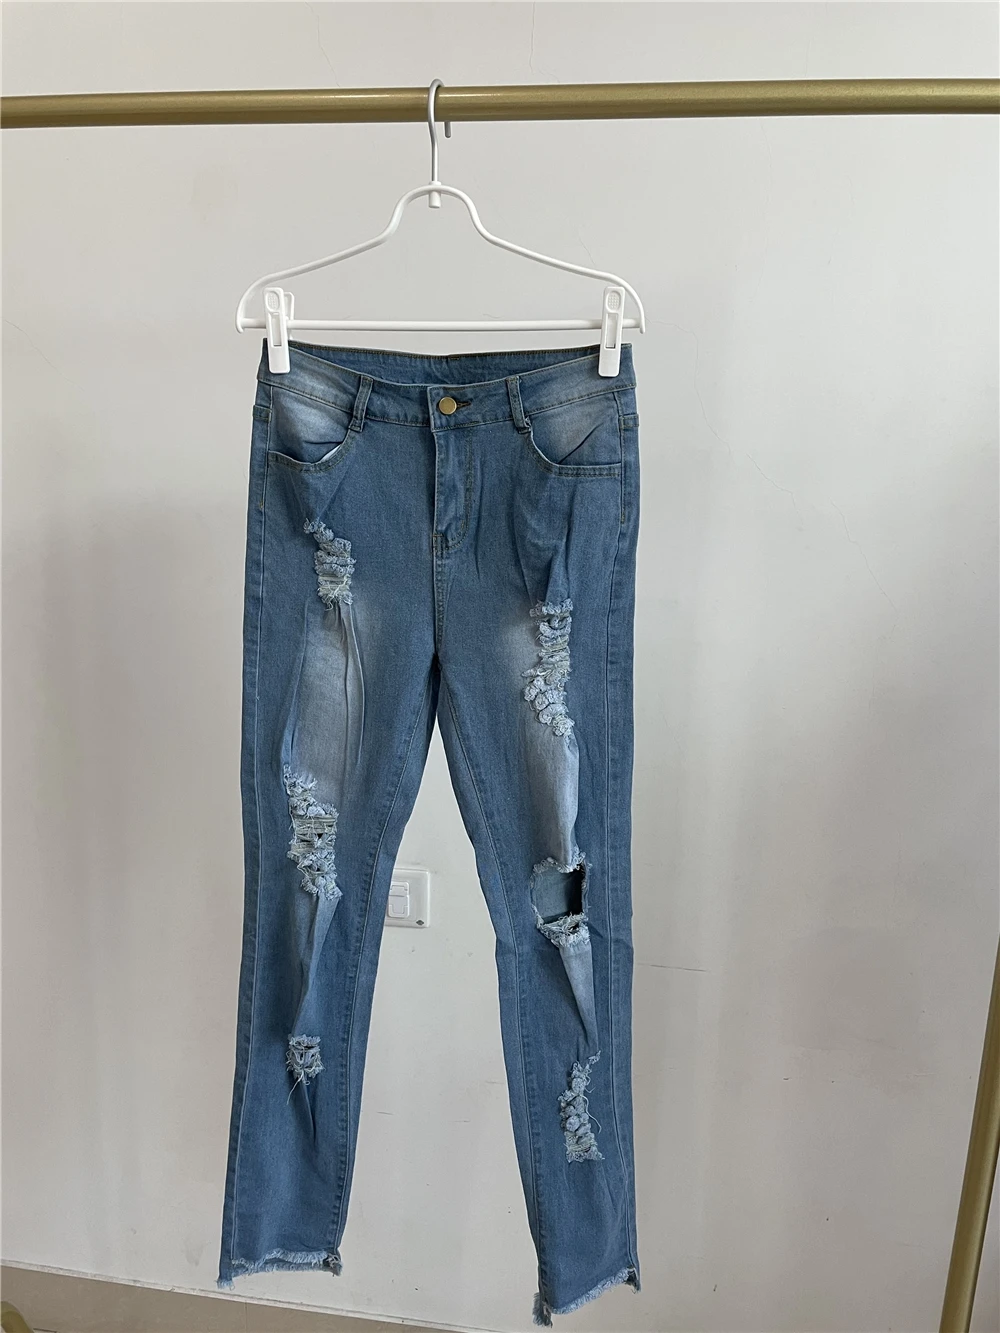 Moda Mujer OEM en línea recta de bolsillo grande alta cintura pantalones  jeans de mezclilla pantalones para damas - China Los hombres y Jean precio